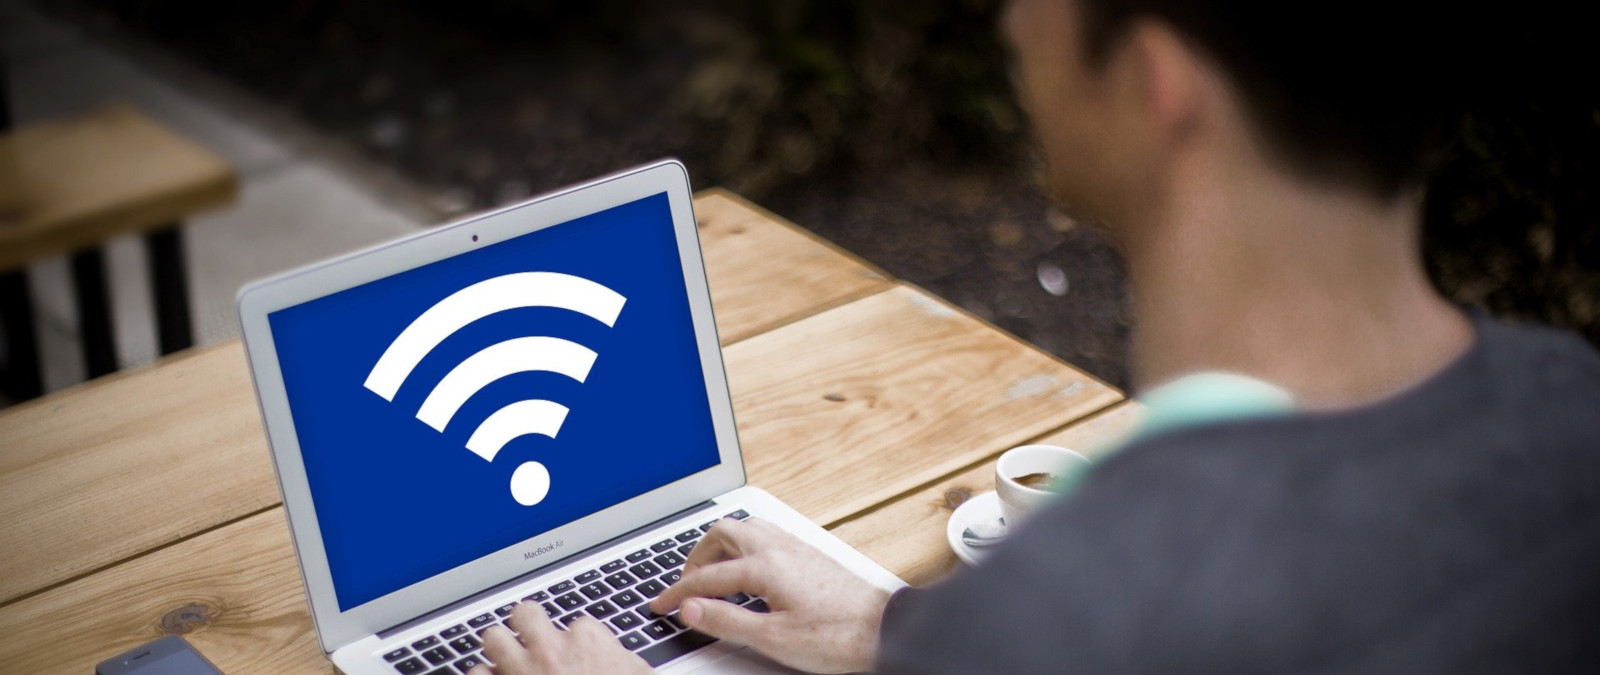 No, no hay ninguna evidencia de que las ondas WiFi sean nocivas para la salud